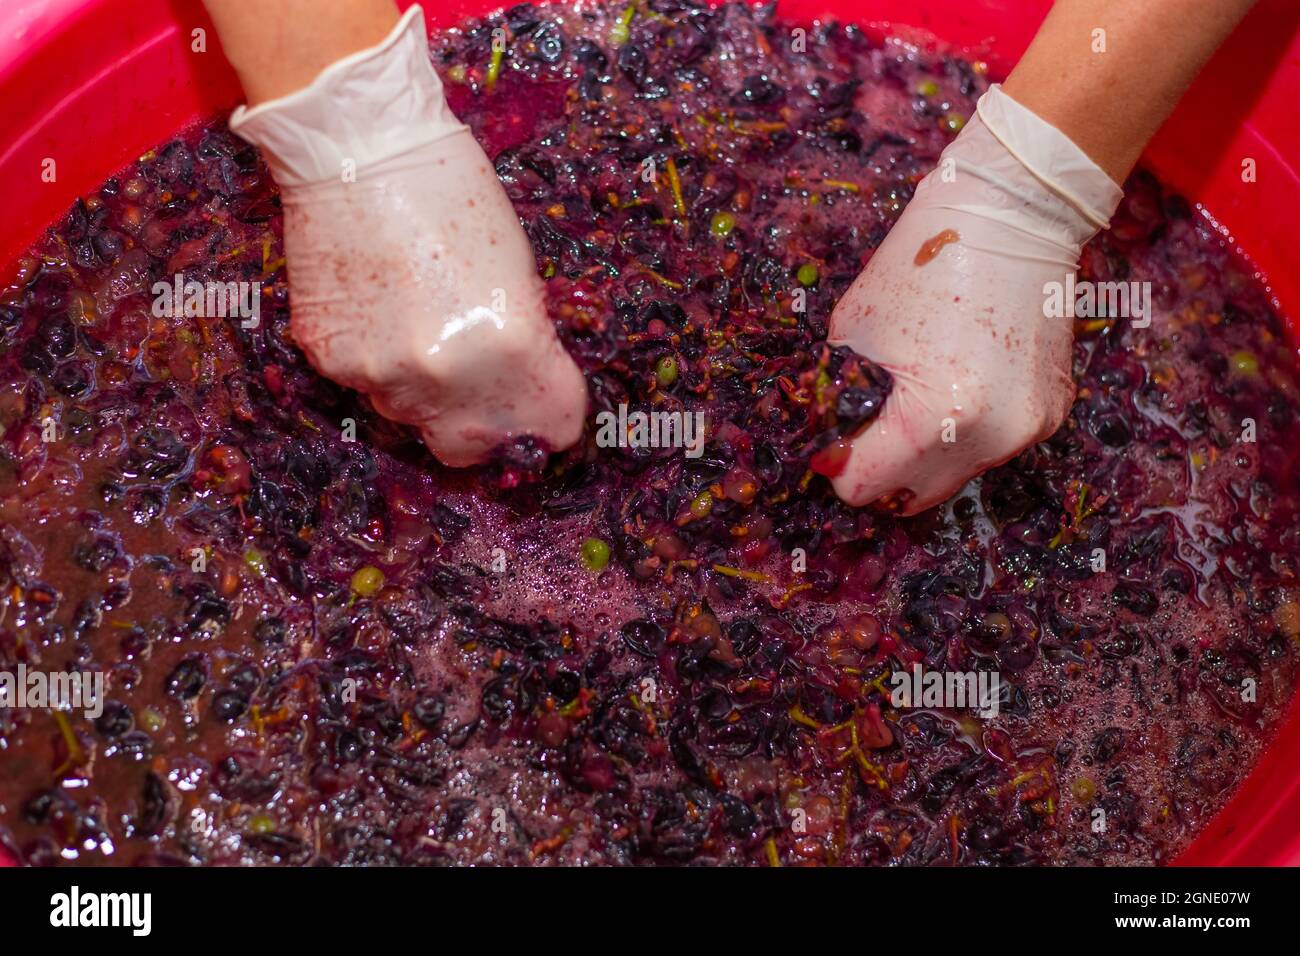 La mujer produce vino de uva. Las manos de las mujeres en guantes en un lavabo con pastel de uva, exprimiendo el jugo. Foto de stock